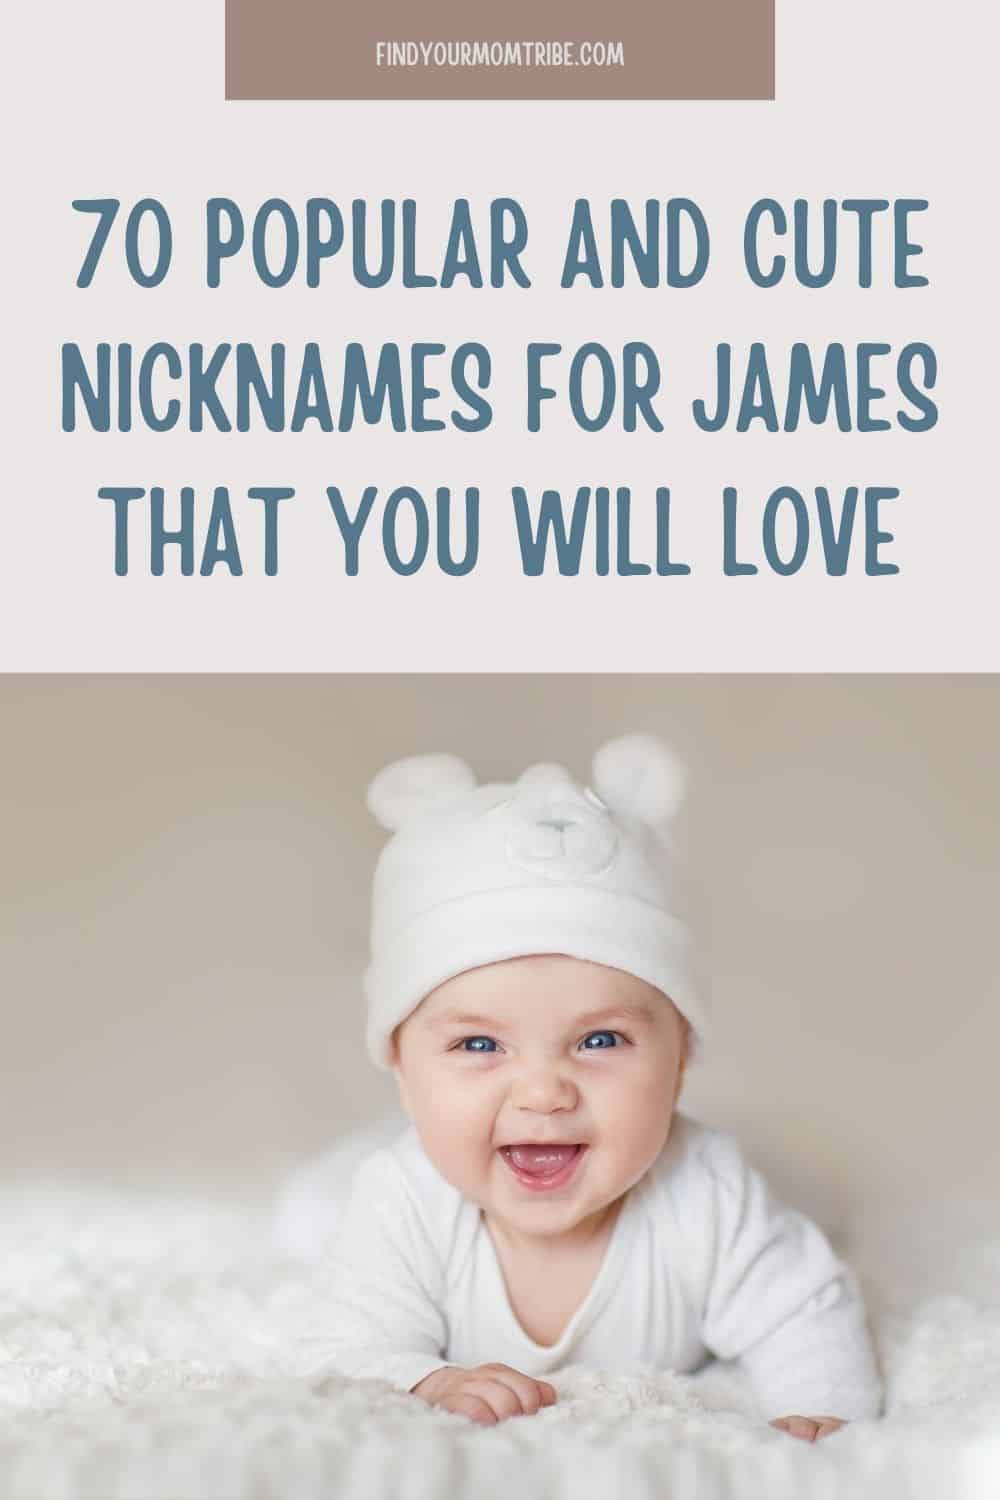  Pinterest nicknames for james